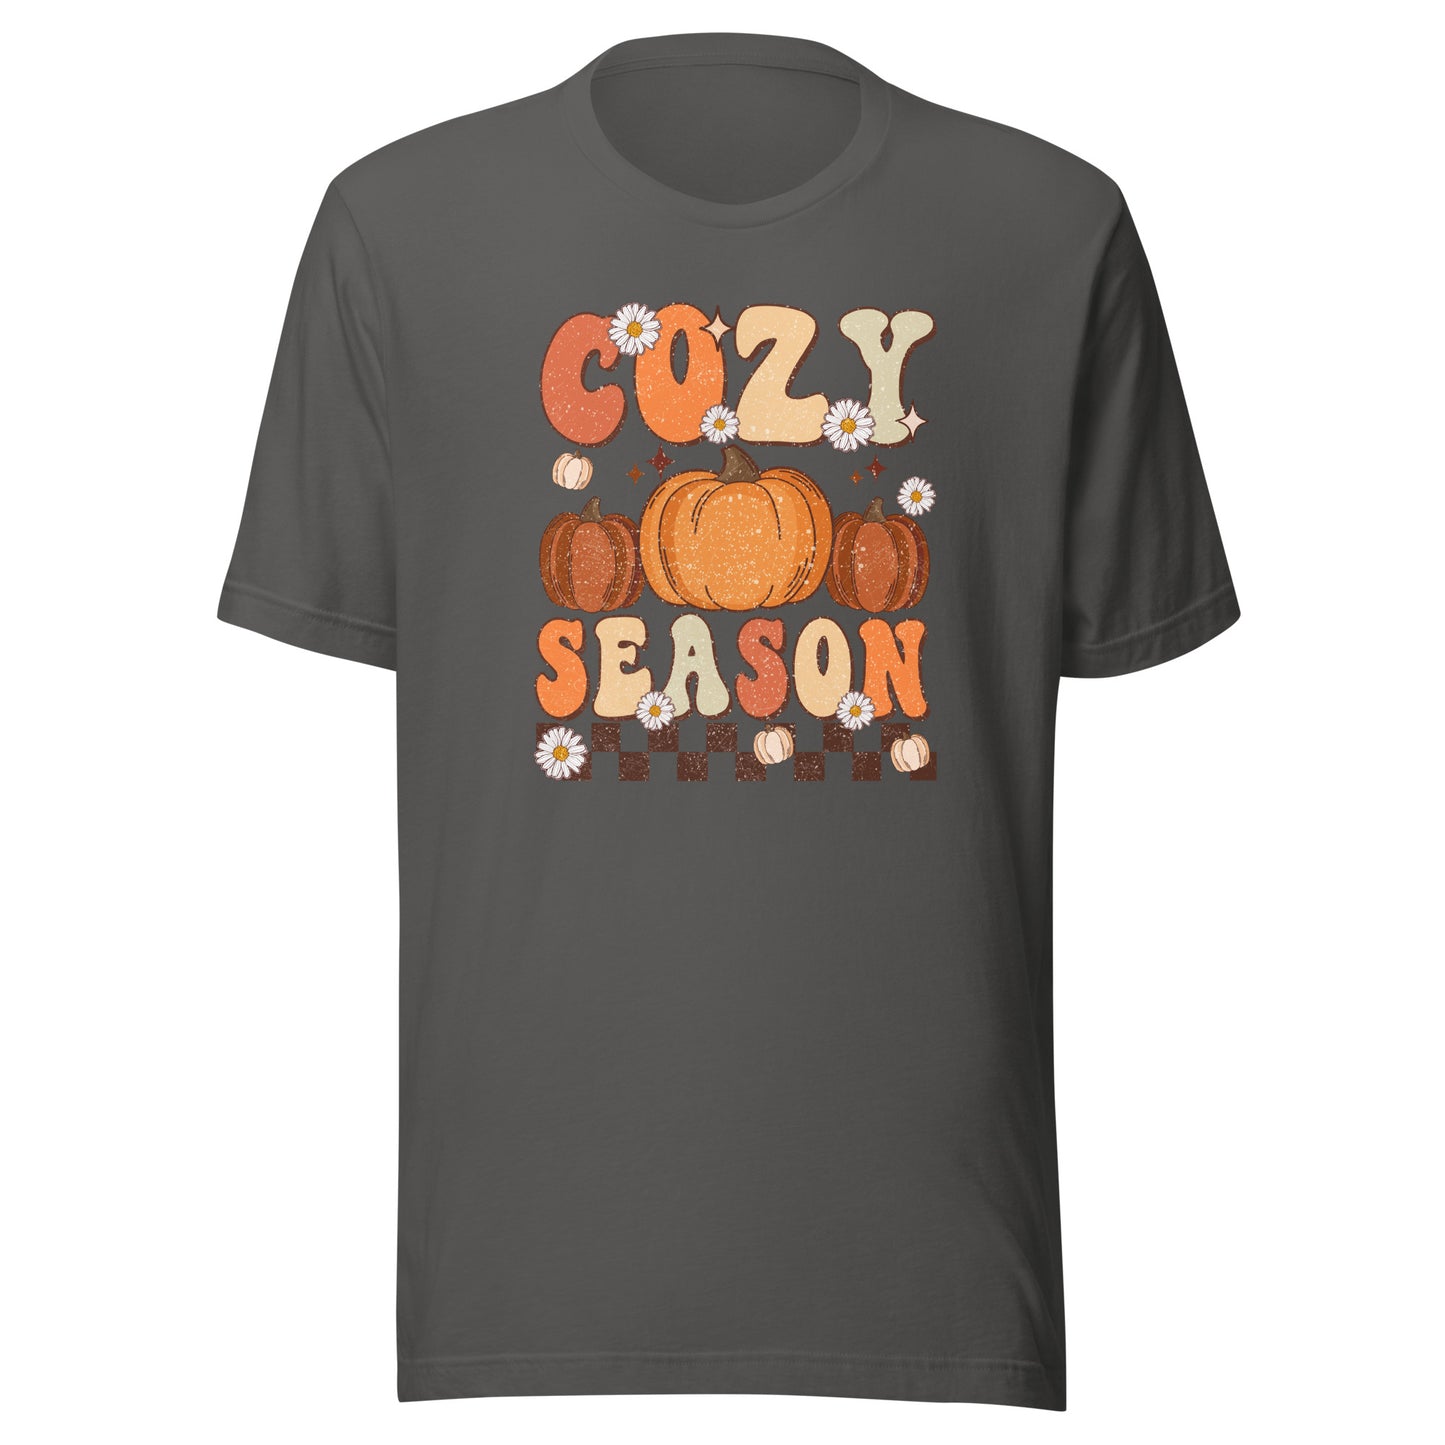 Cozy Season Checkered T-Shirt